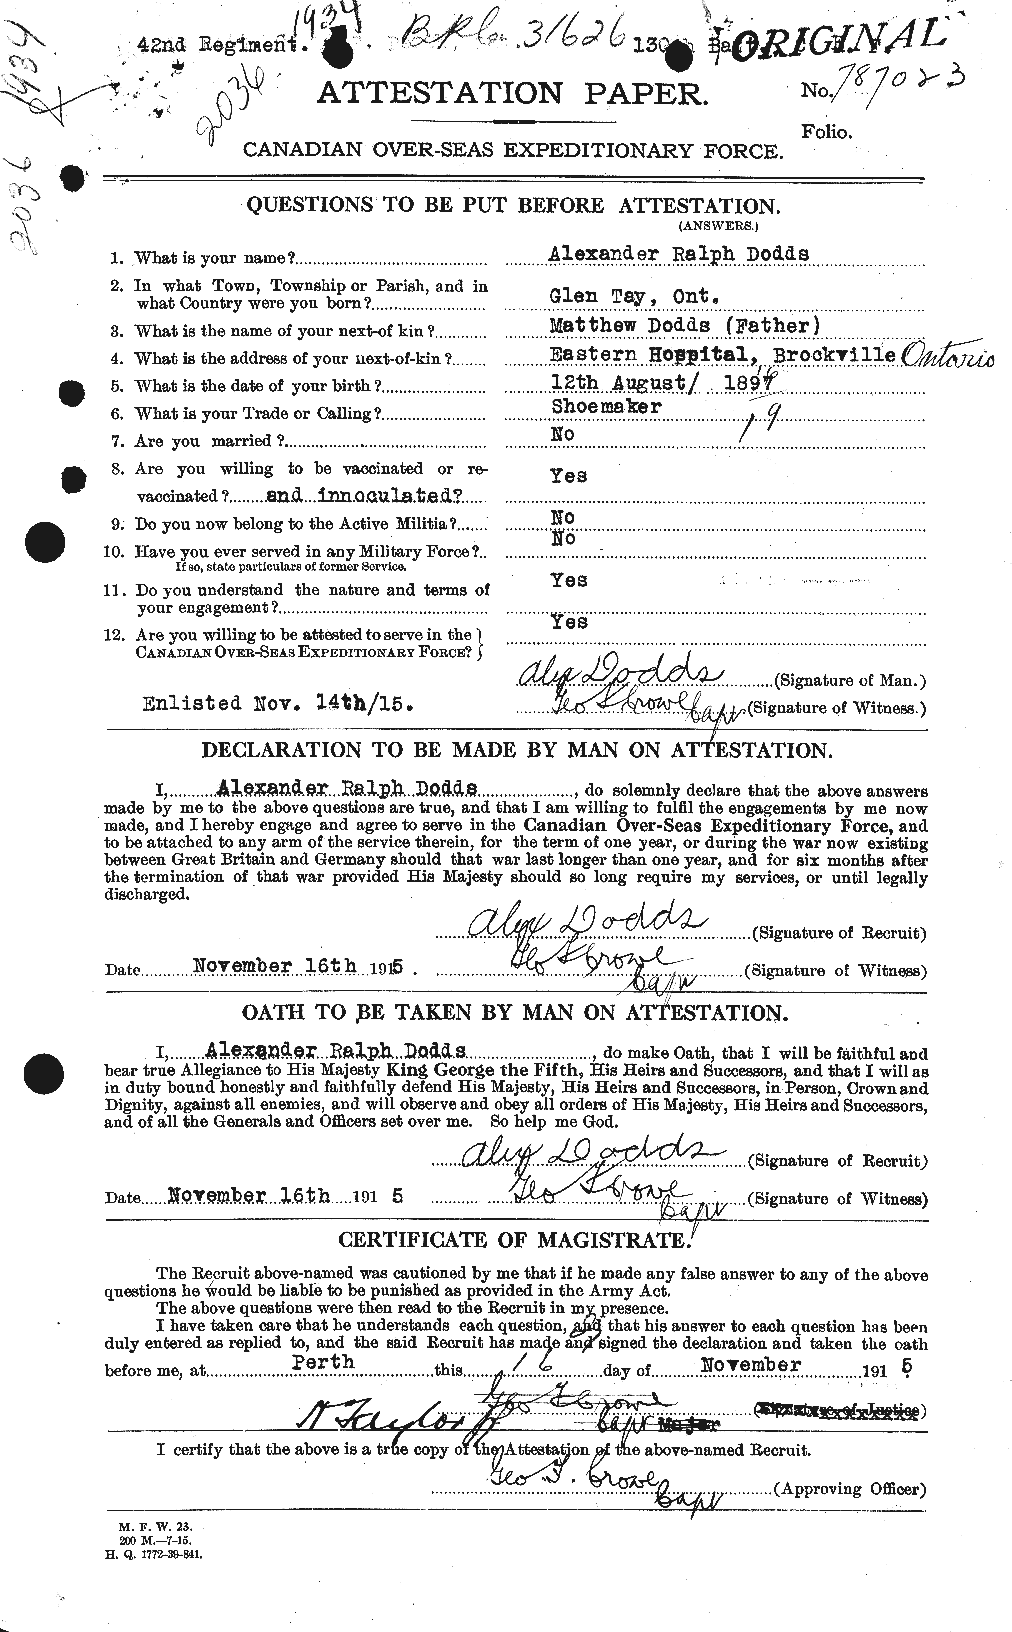 Dossiers du Personnel de la Première Guerre mondiale - CEC 294347a